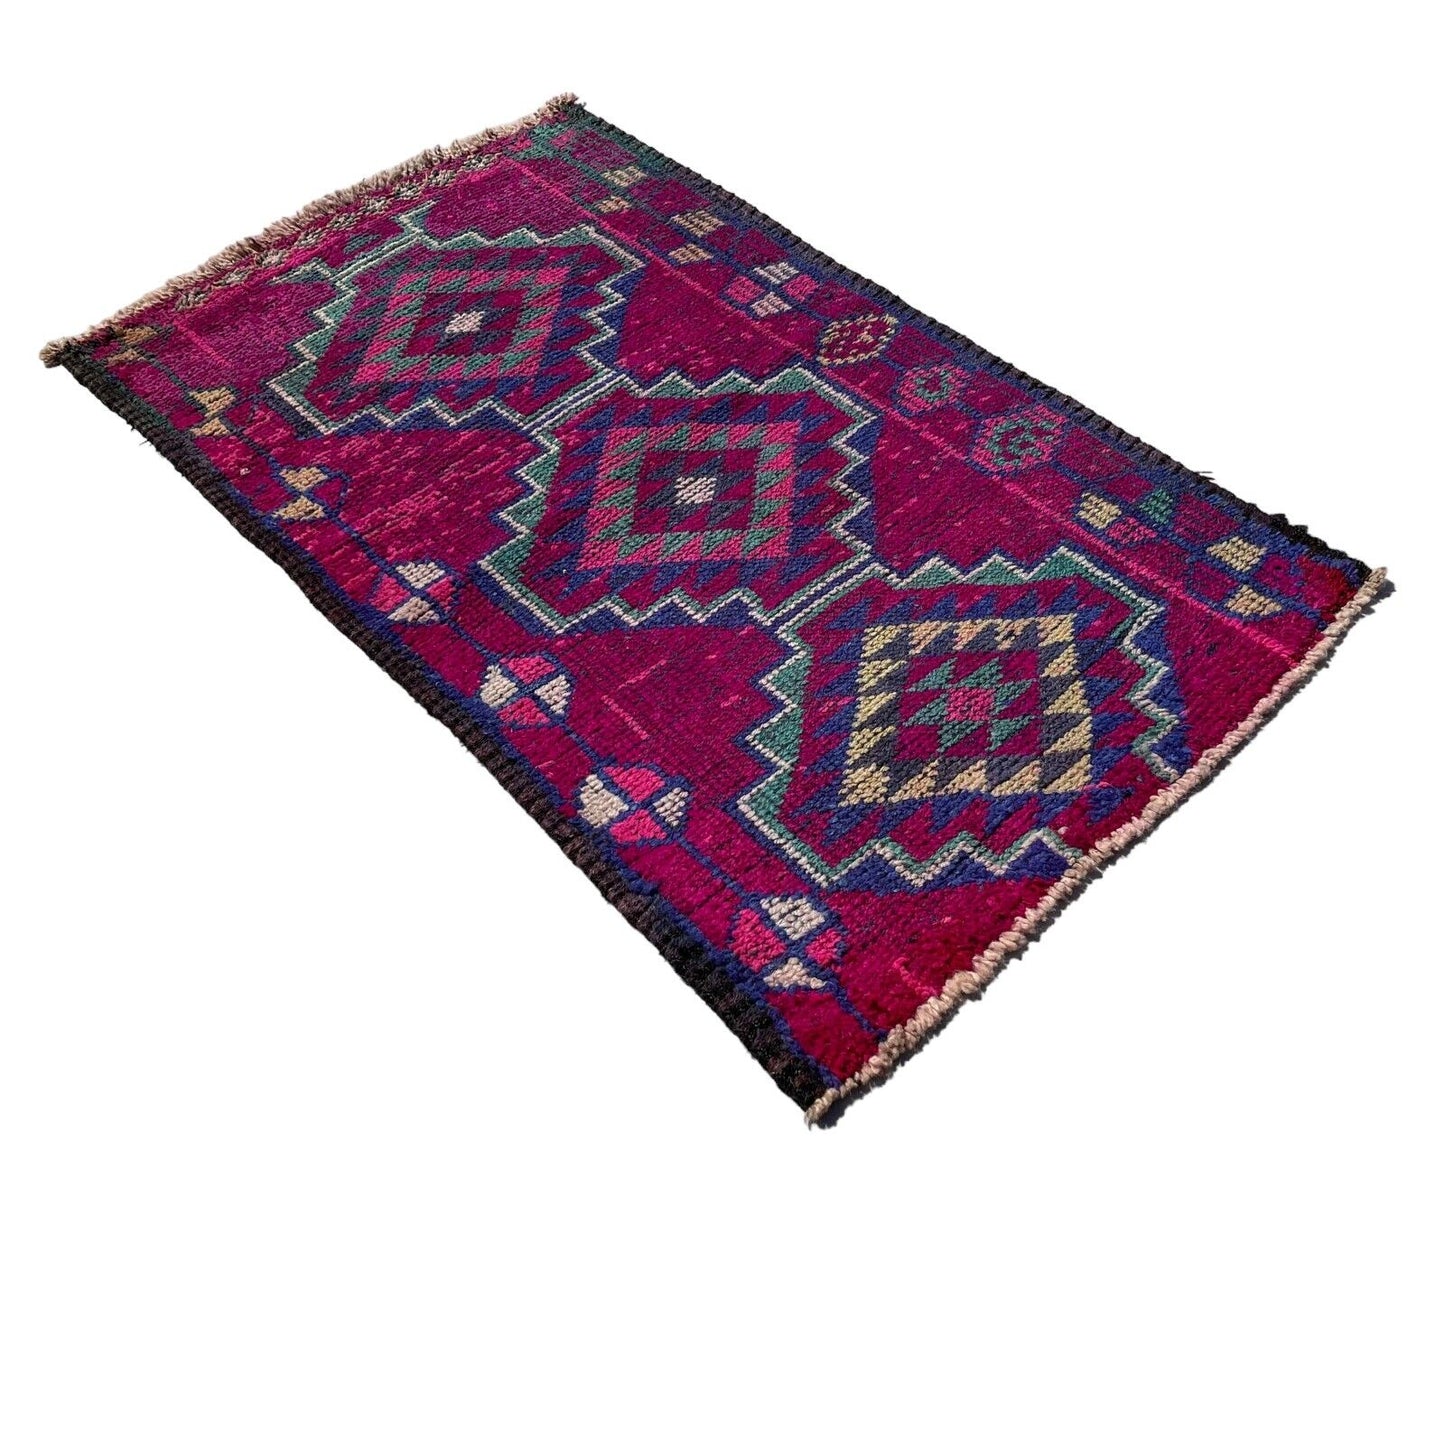 Traditional Turkish Kilim Rug,Vintage Kelim Teppich 140x85 Cm